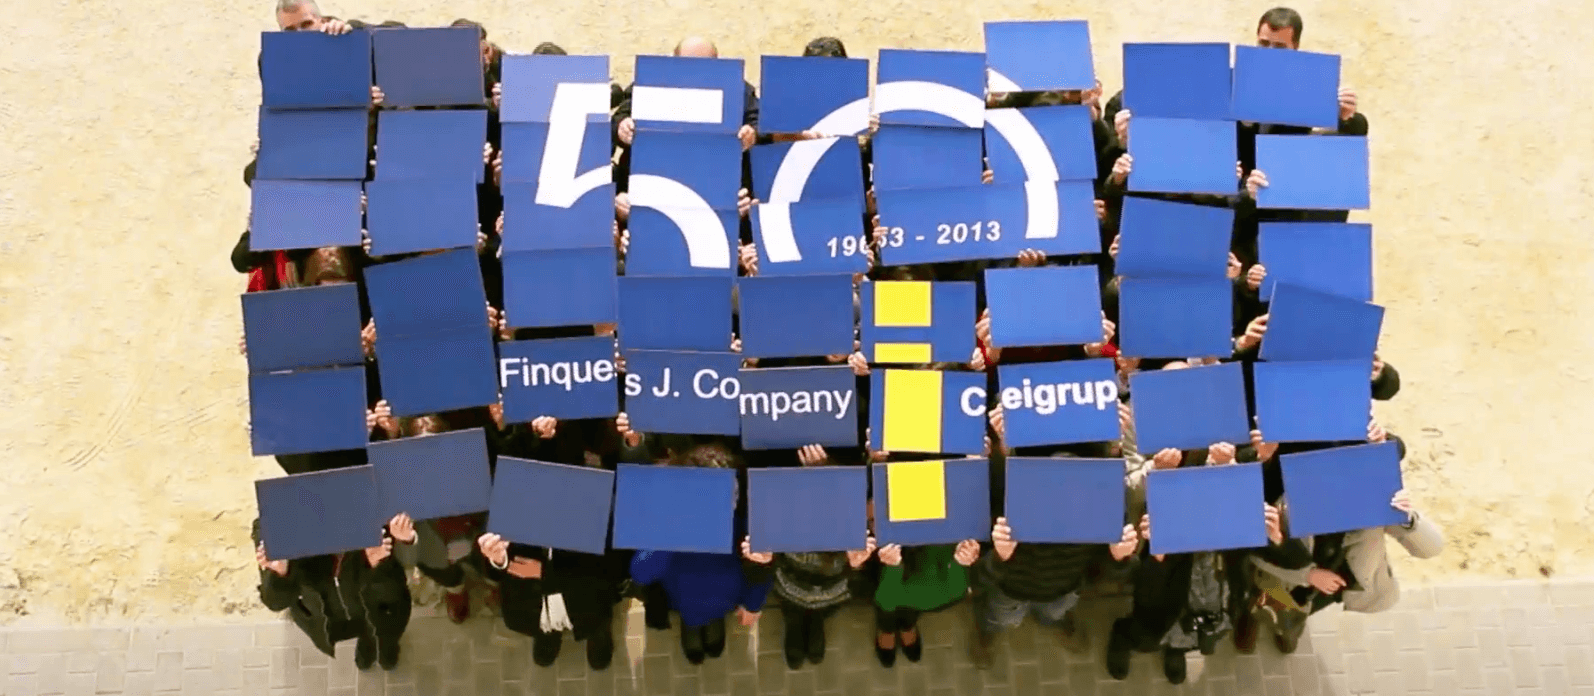 50è aniversari de Finques Company